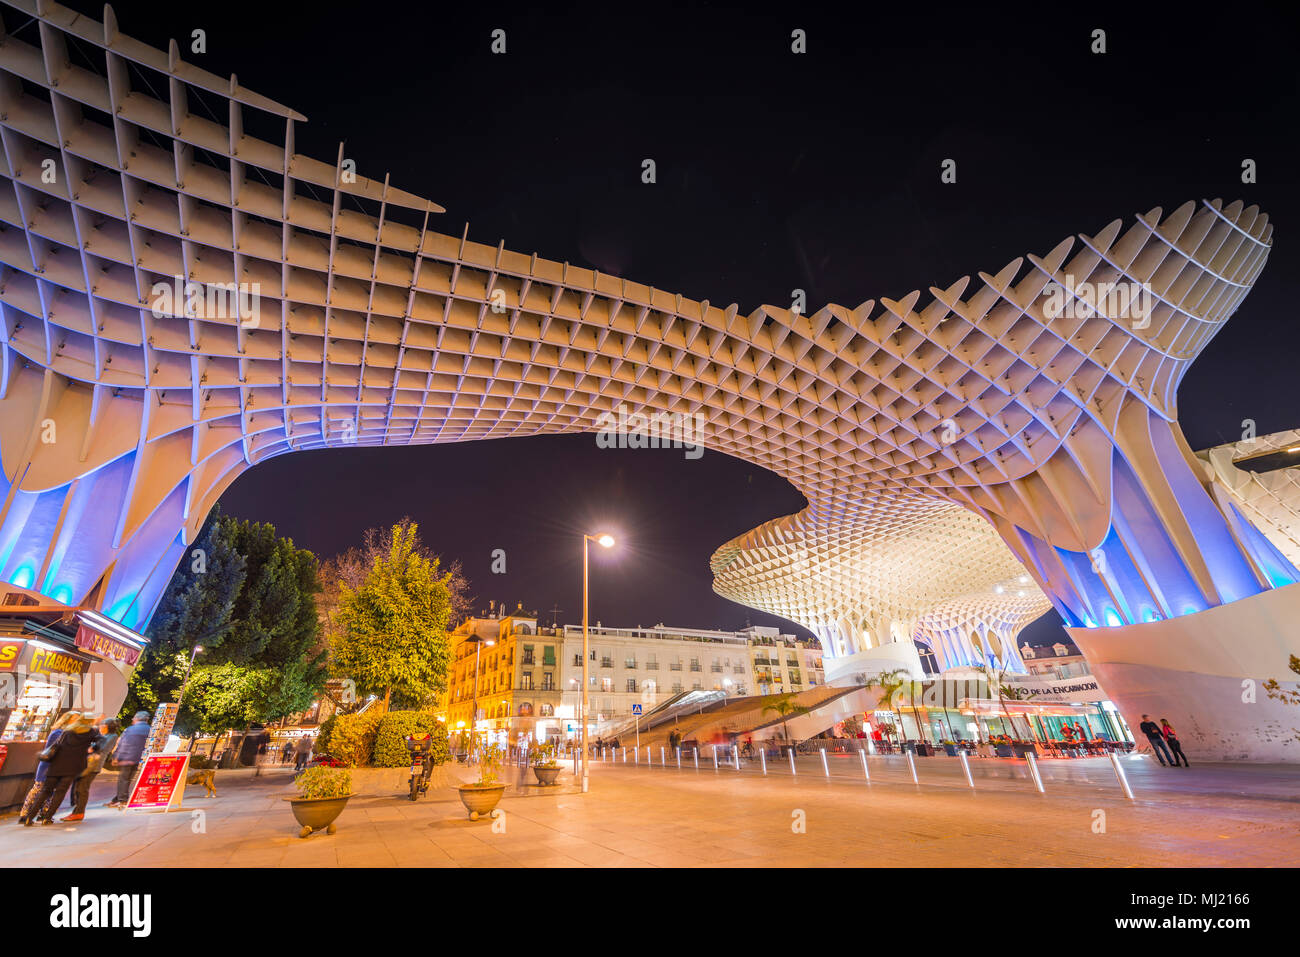 Architettura moderna struttura in legno Metropol Parasol, illuminata di notte, Plaza de la Encarnación, Siviglia, Andalusia, Spagna Foto Stock